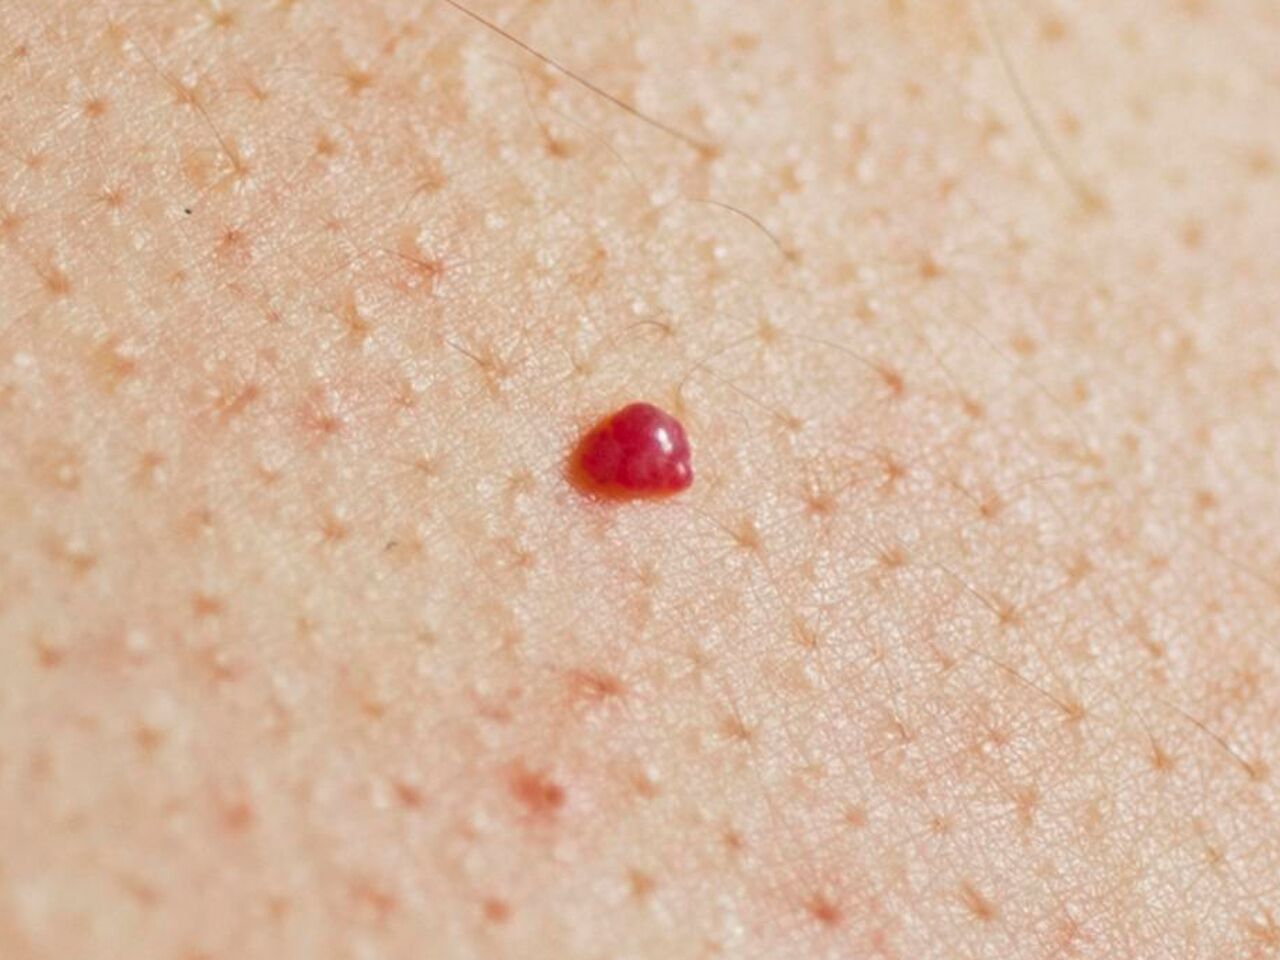 Красные пятна на коже: причины и лечение